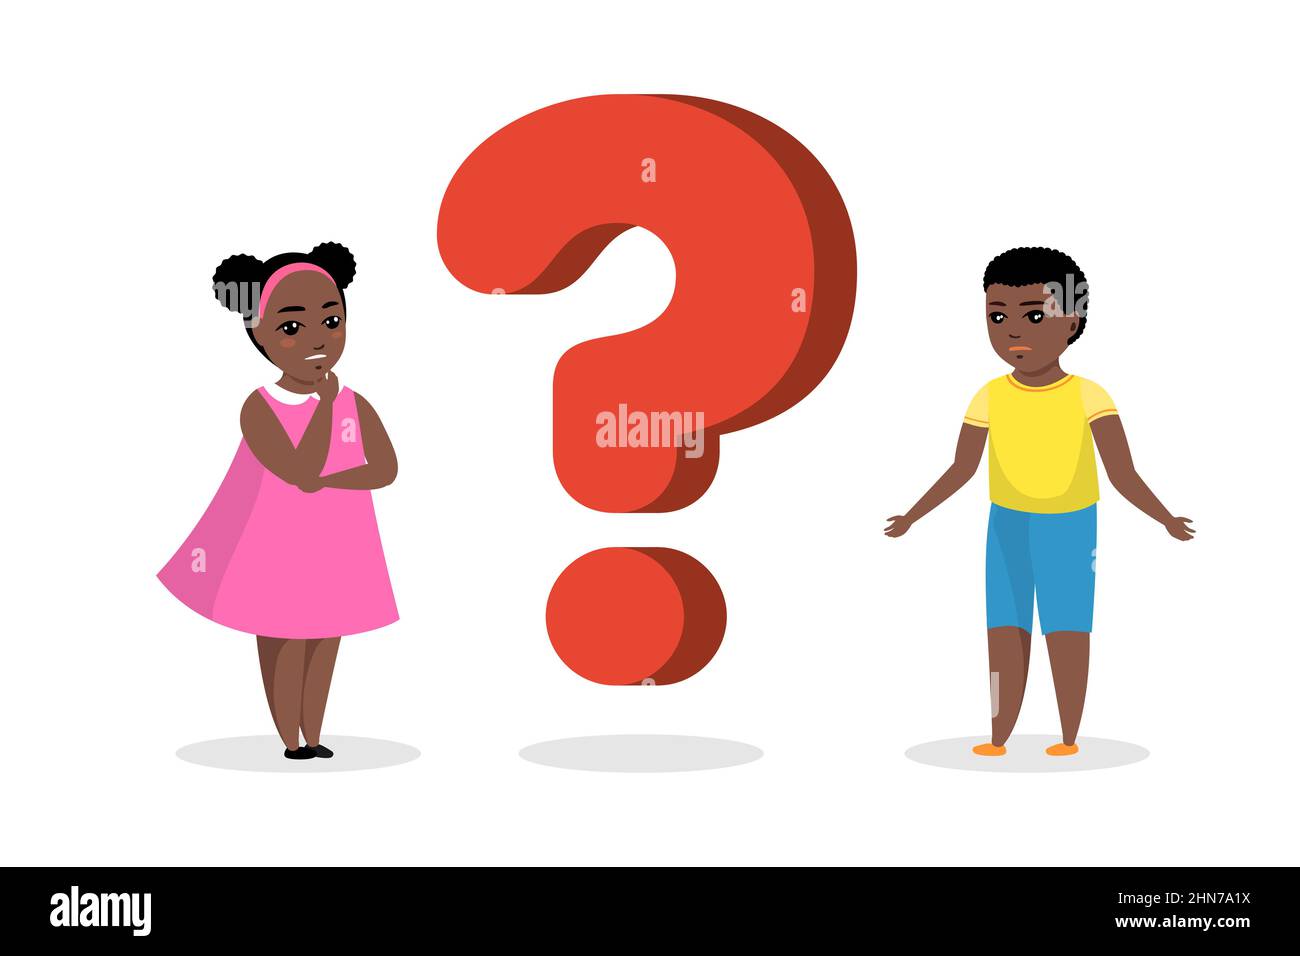 Schwarze afroamerikanische Jungen und Mädchen stehen nahe einem großen Fragezeichen. Konzept des Wissenstransfer durch nachdenkliche junge Menschen. Neugierige Kinder stellen Fragen und suchen nach Antworten. Vektorgrafik Stock Vektor